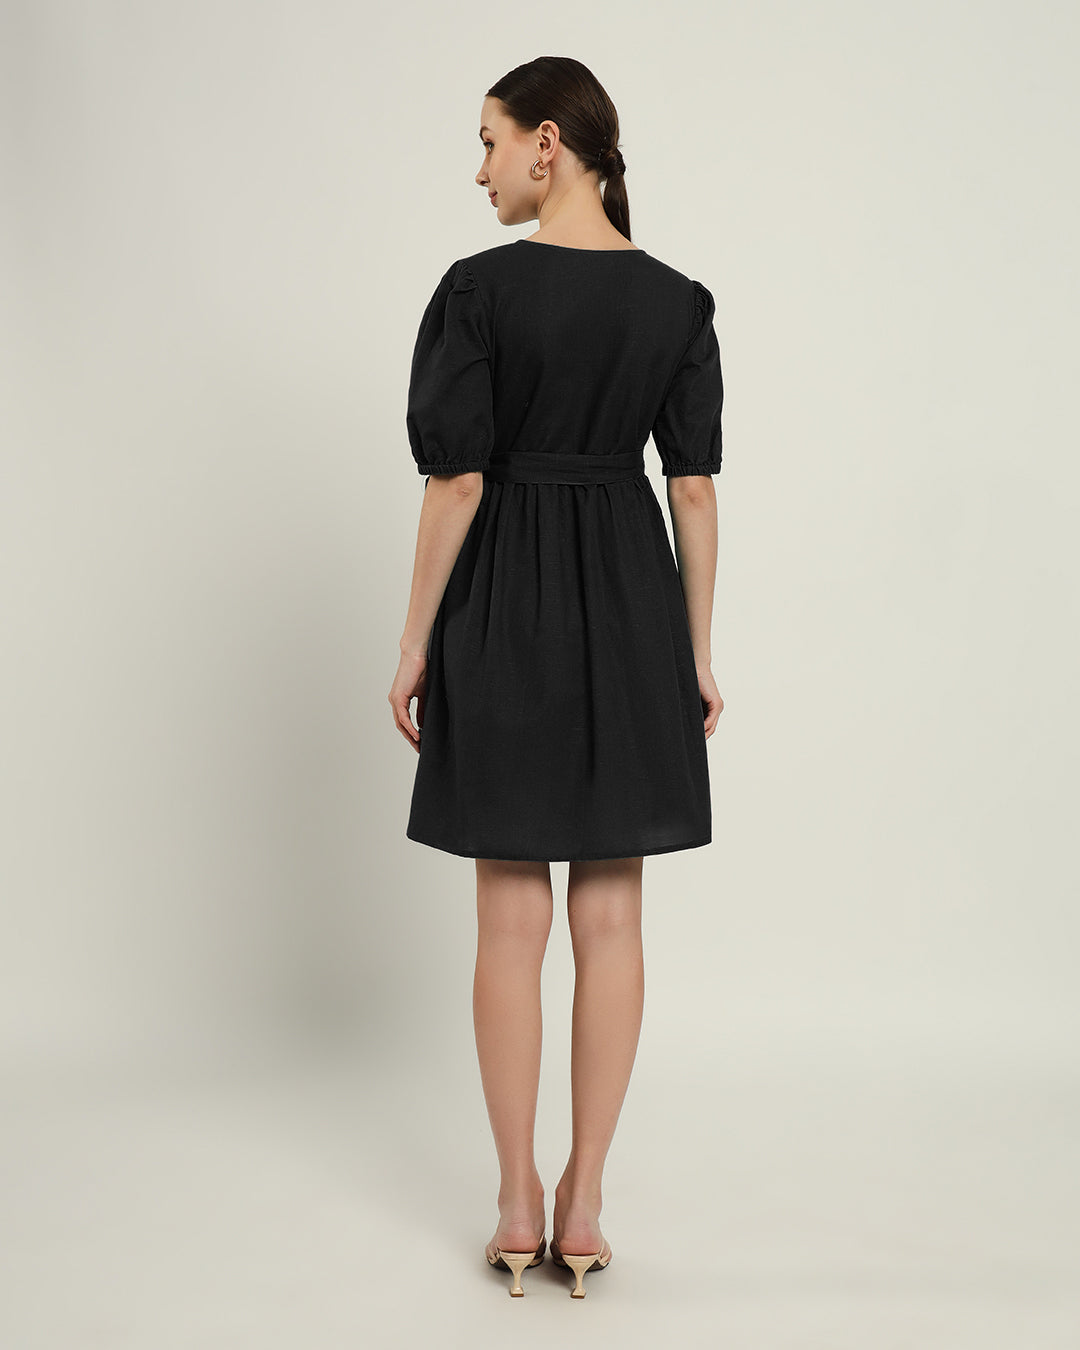 The Inzai Noir Cotton Dress